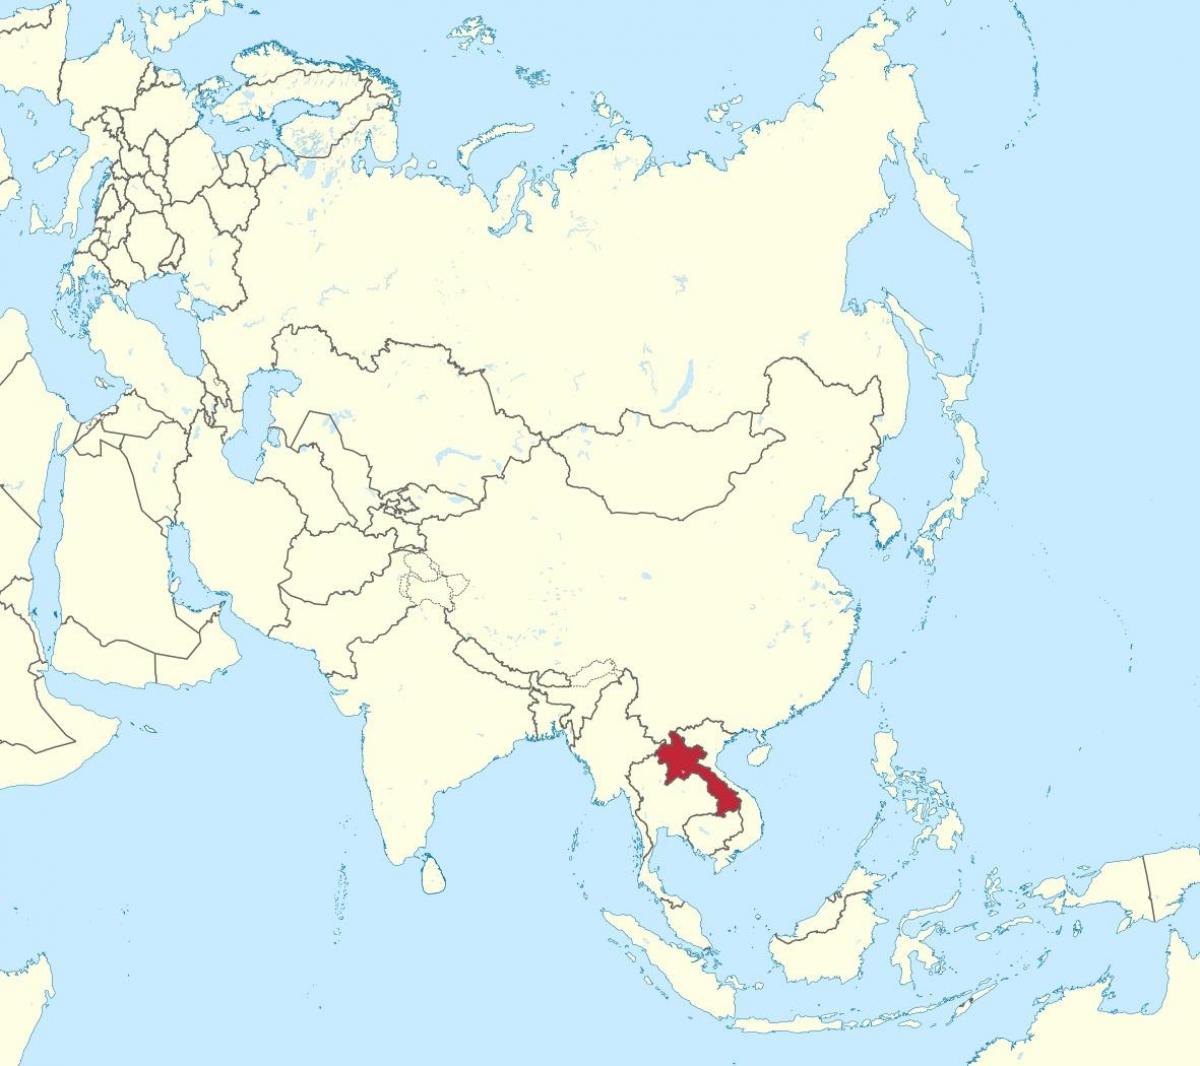 Mapa do laos ásia